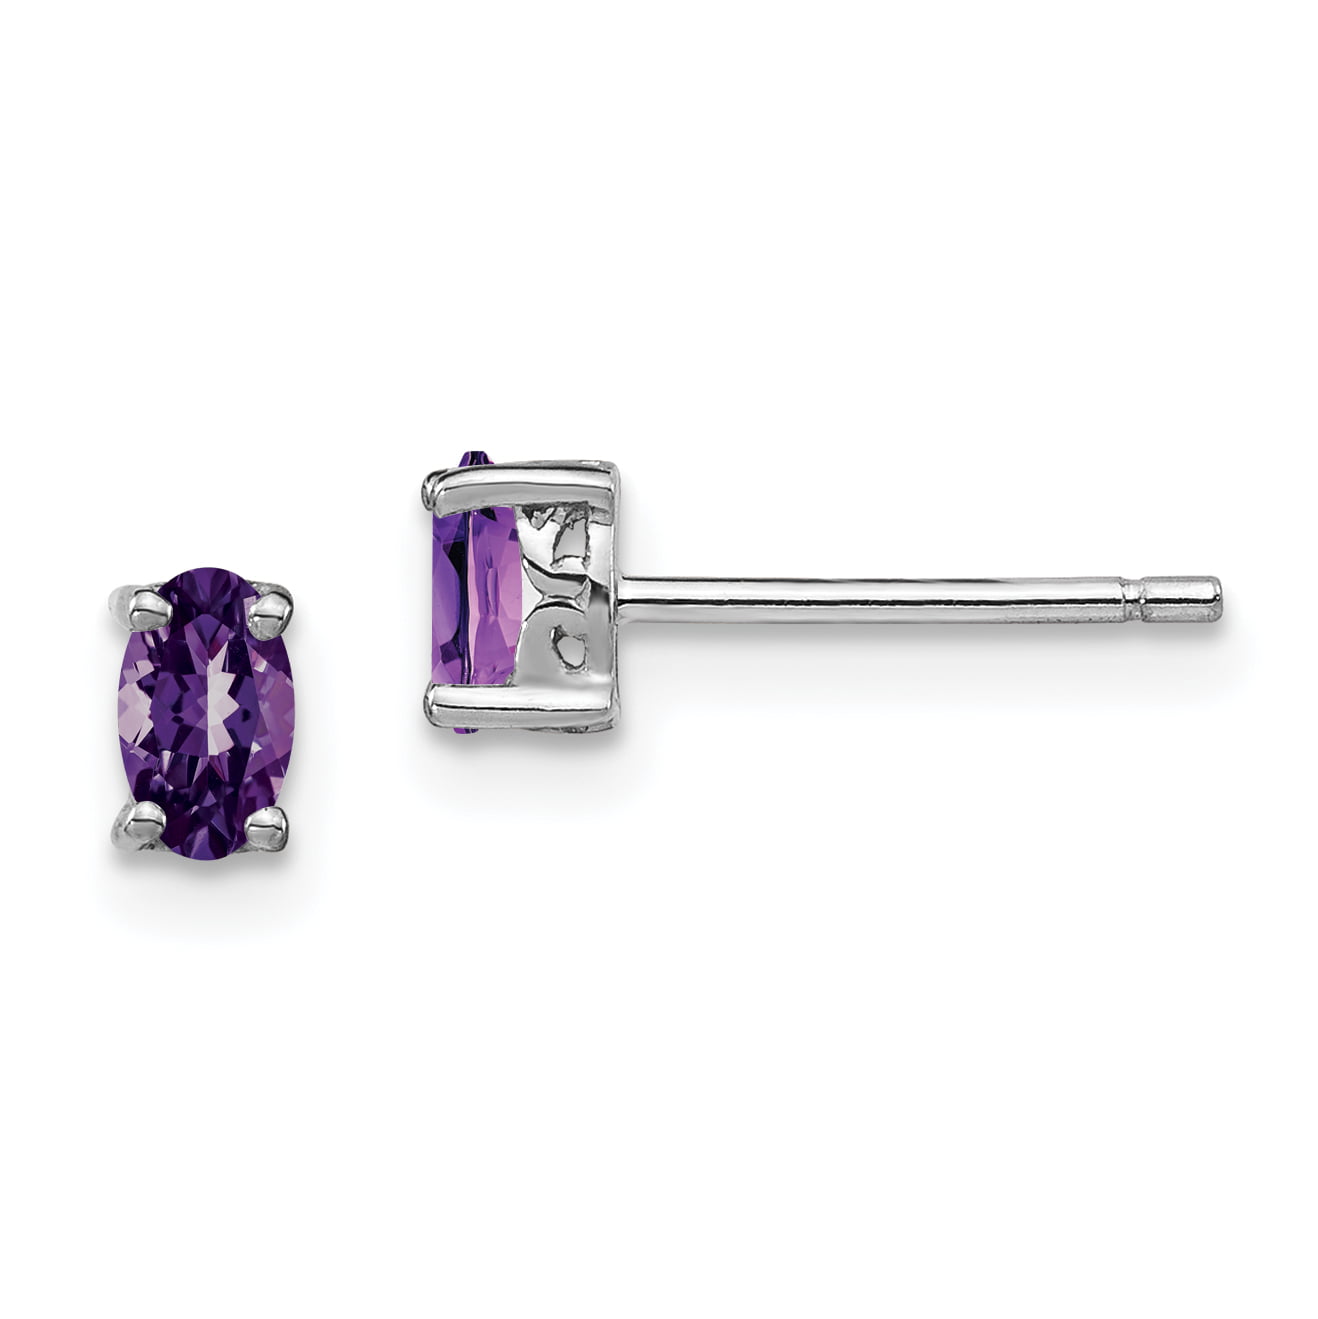 3mm Gemstones Faceted Amethyst Sterling Silver Stud Earrings Purple Gemstones.